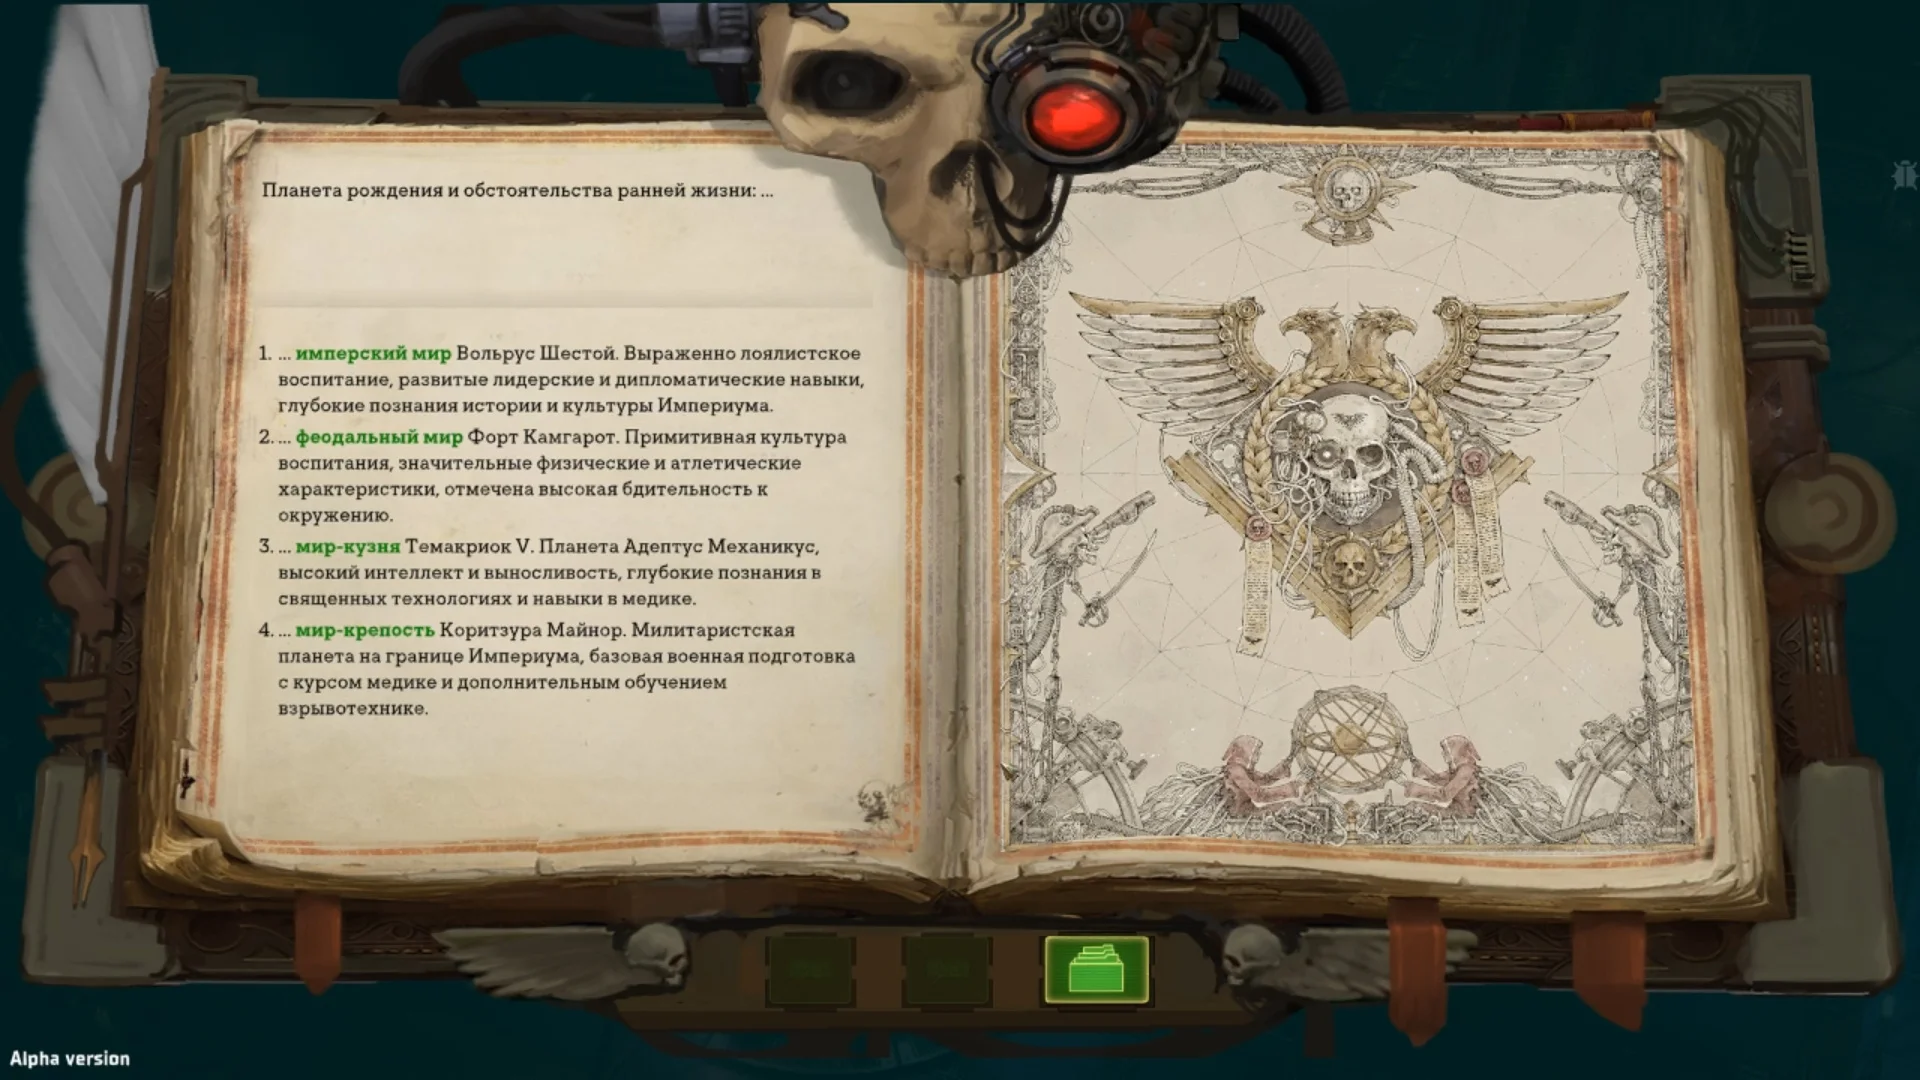 Поиграли в Warhammer 40,000: Rogue Trader и делимся впечатлениями от альфа-версии ролевой игры - фото 1